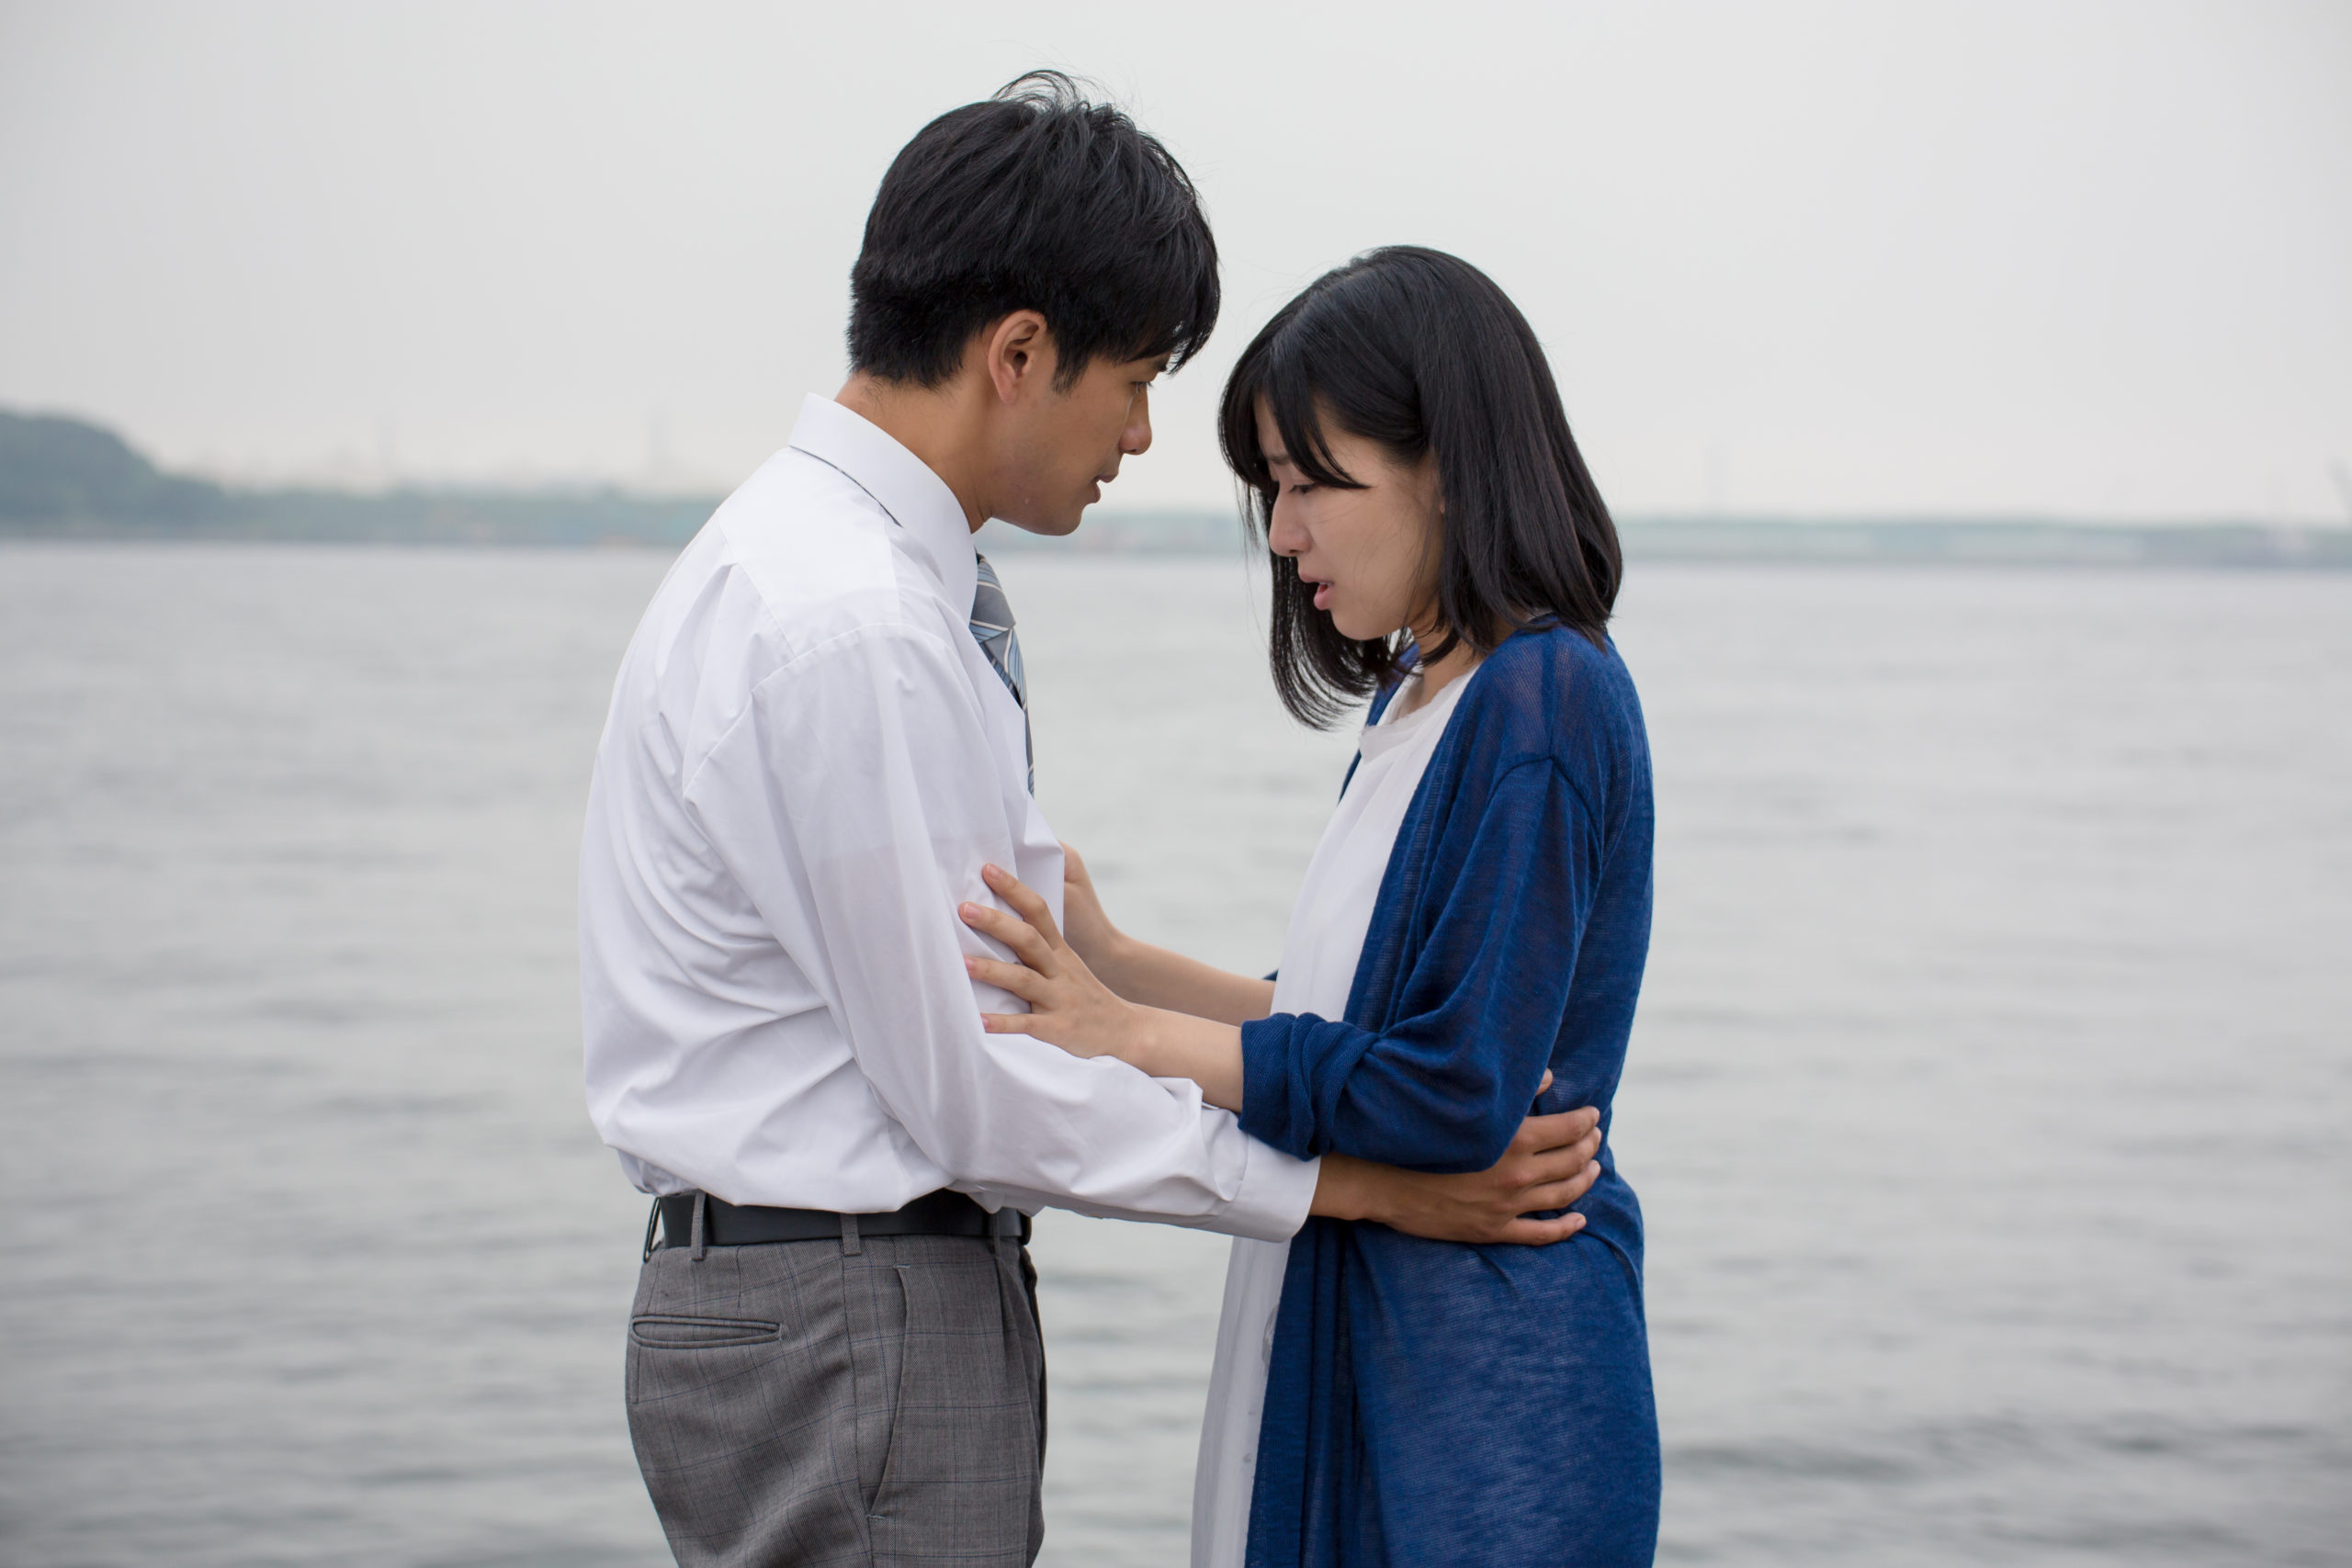 Suis-moi je te fuis/Fuis-moi je te suis » : l'amour à contretemps par Koji  Fukada